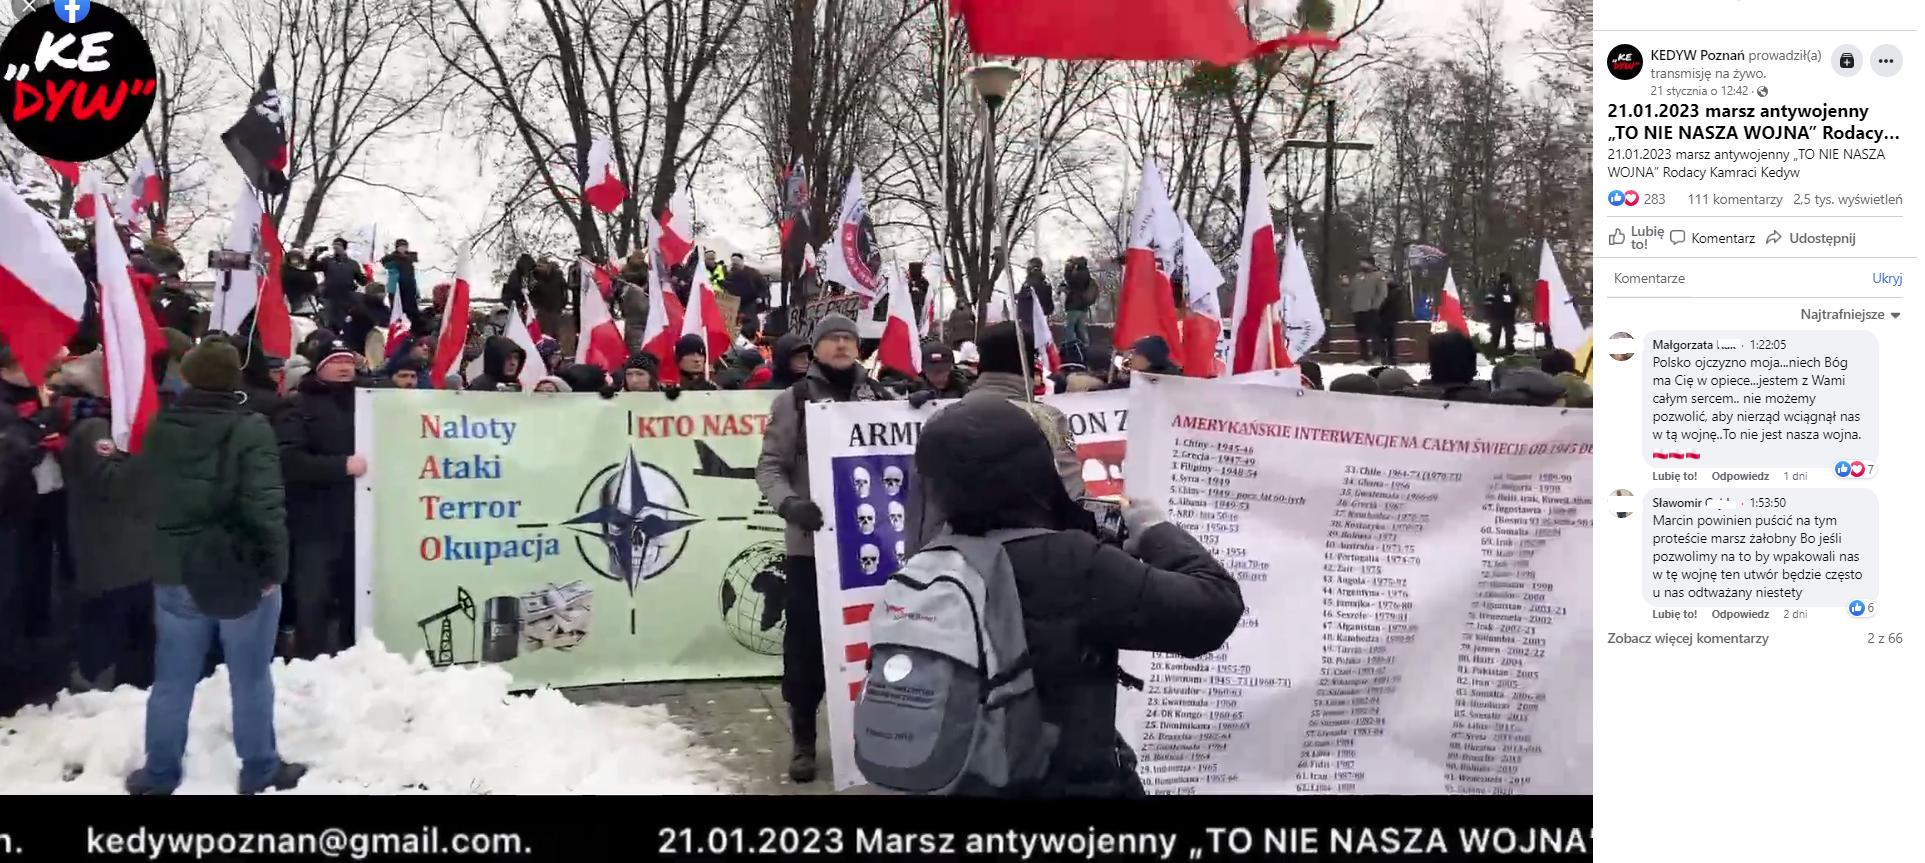 Protest antywojenny, zorganizowany przez rodaków kamratów 21 stycznia w Warszawie